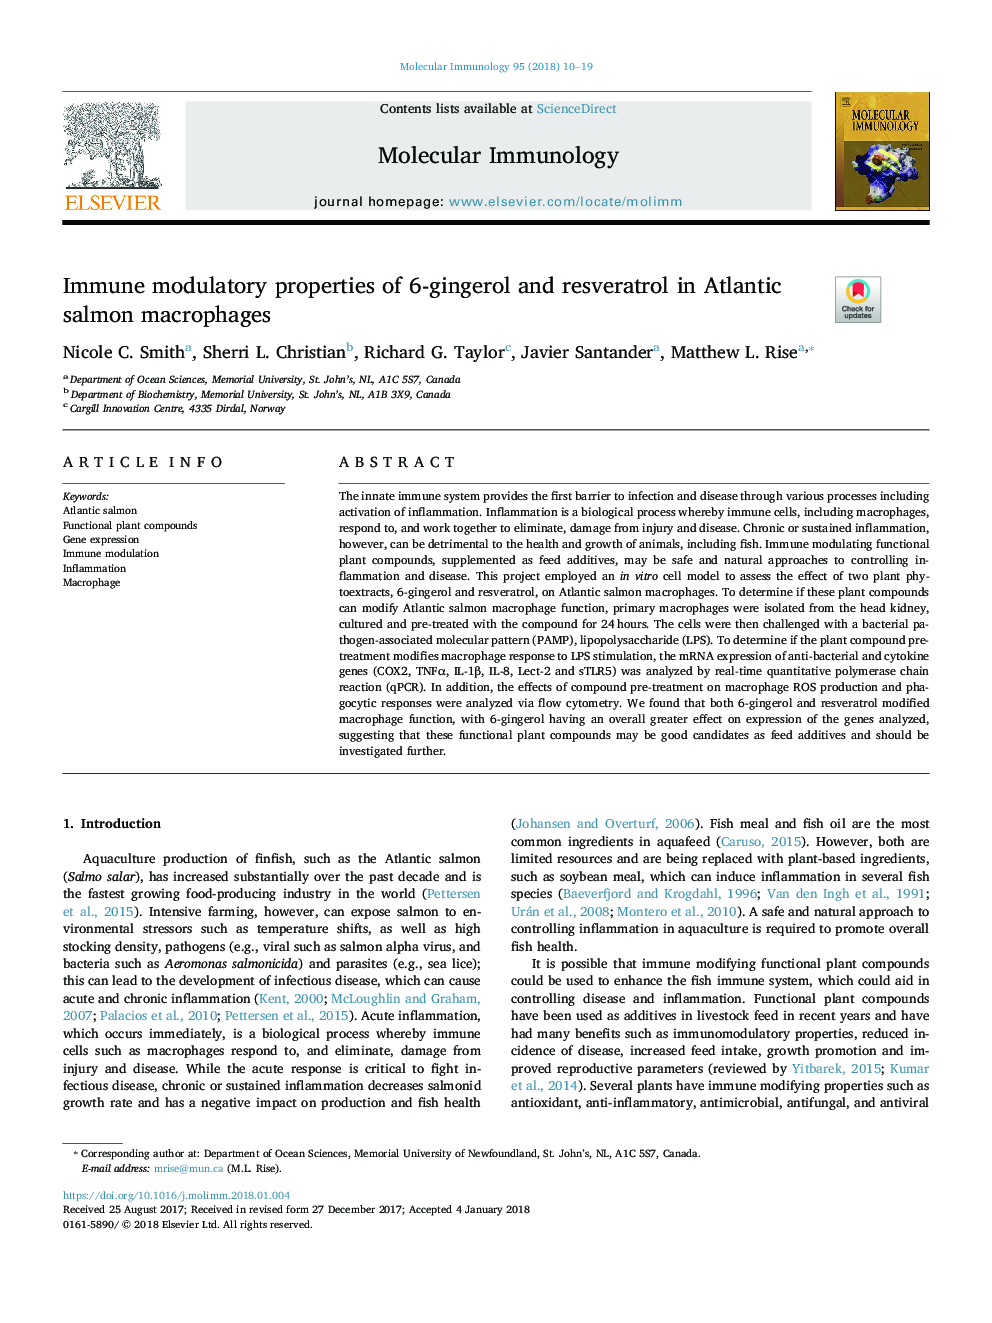 Immune modulatory properties of 6-gingerol and resveratrol in Atlantic salmon macrophages